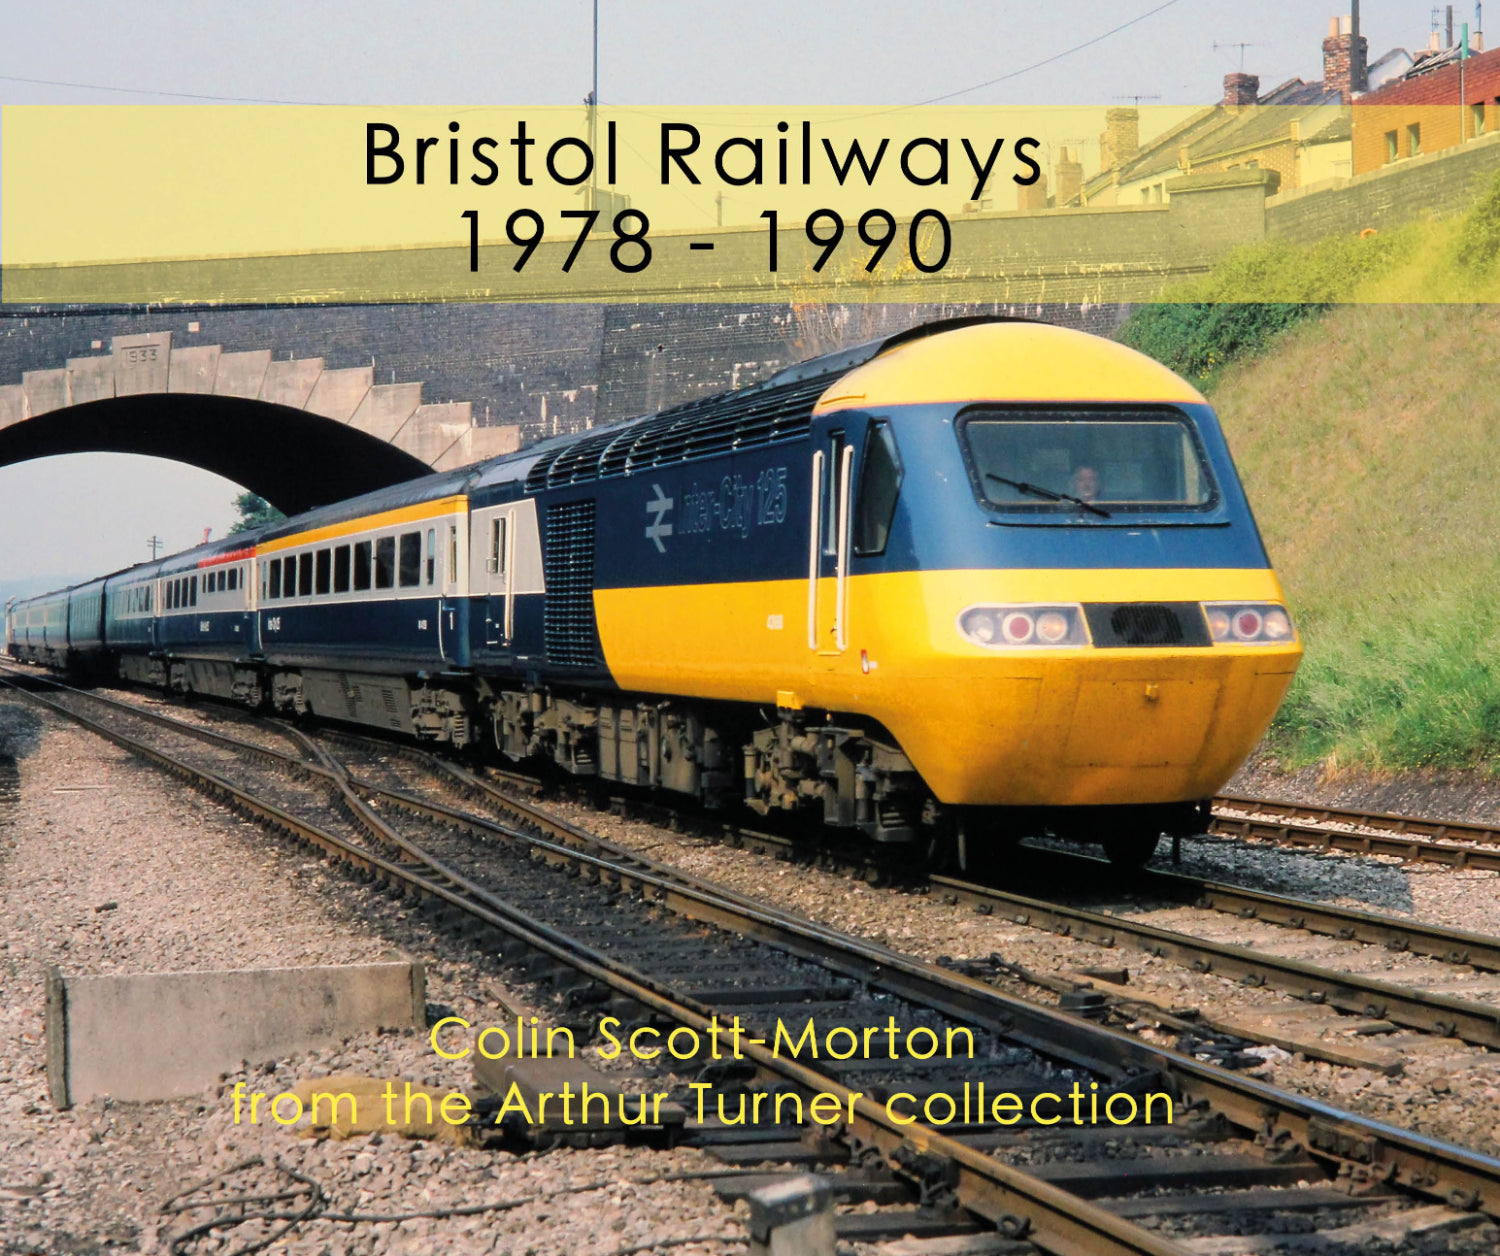 Bristol Railways 1978 – 1990